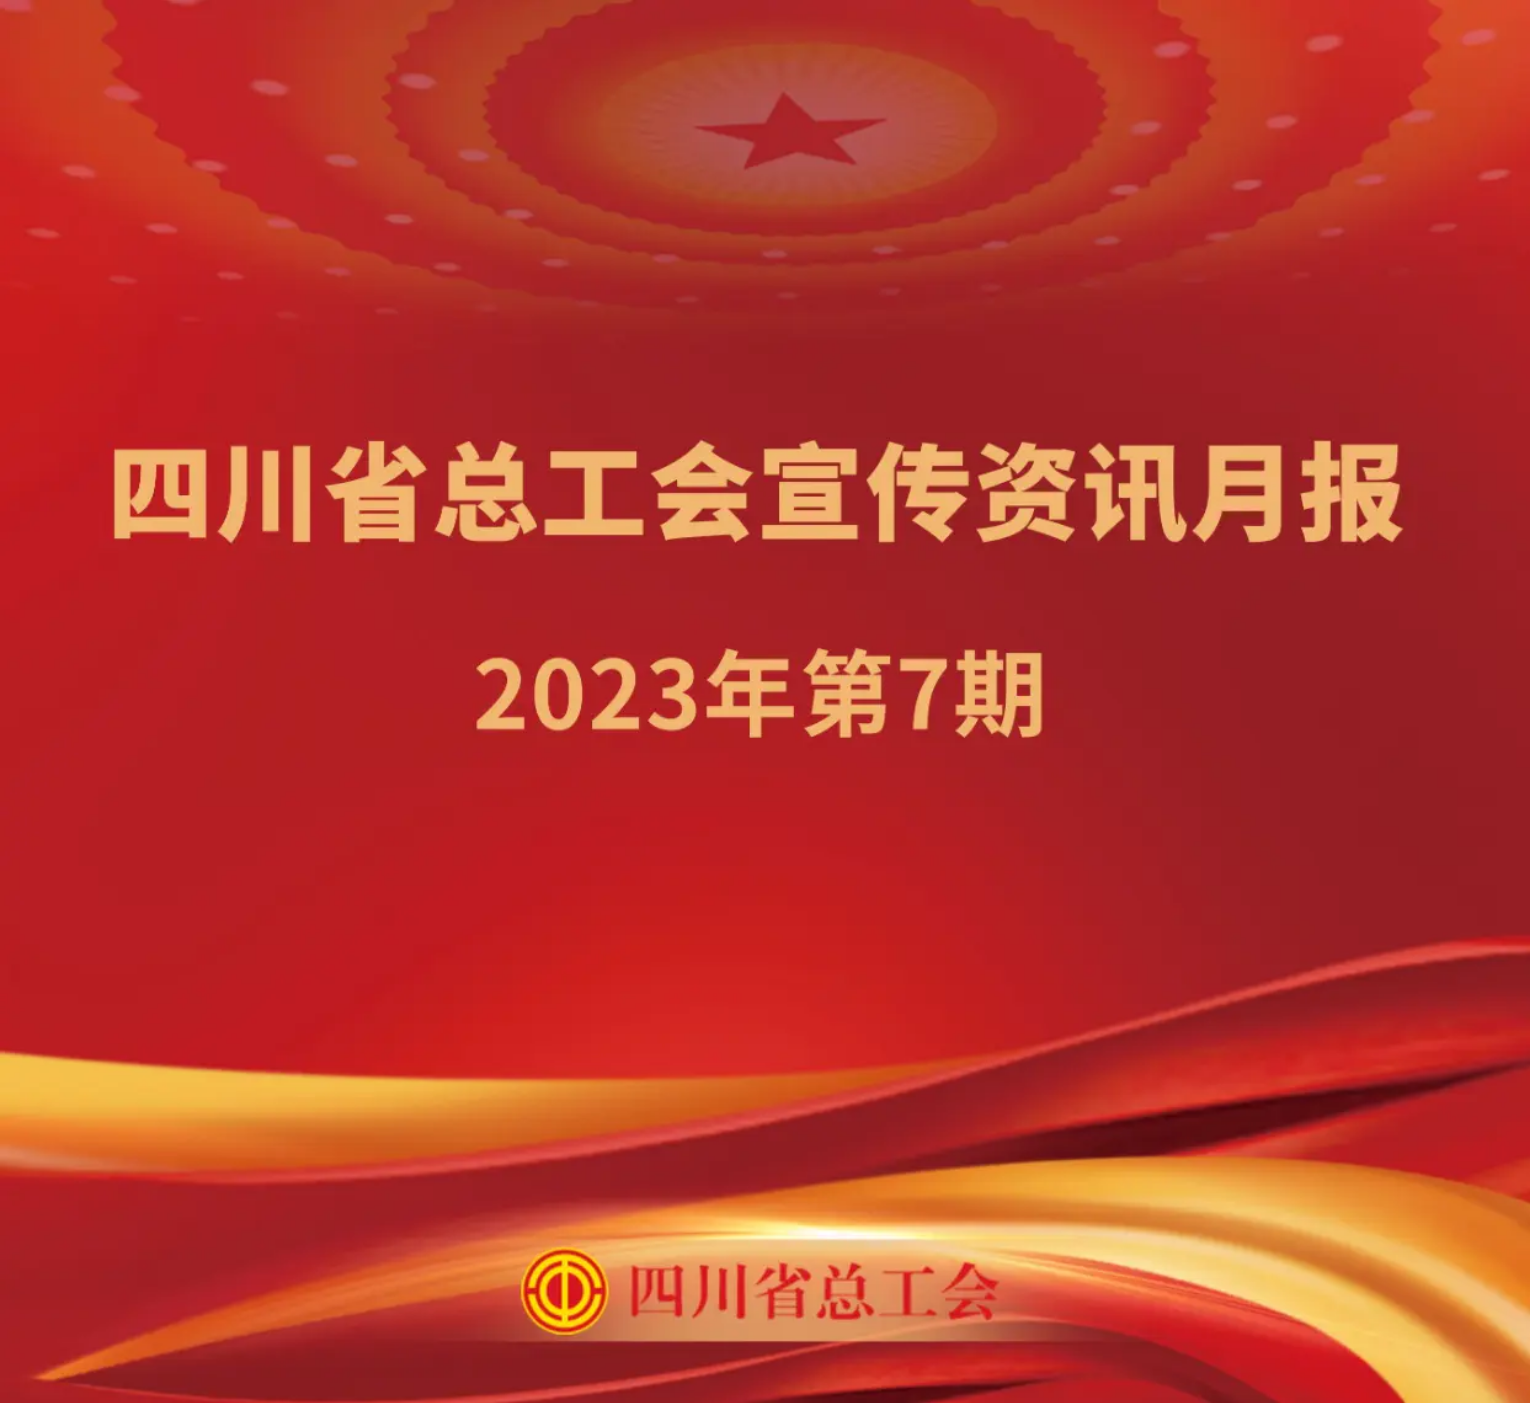 四川省总工会宣传资讯月报2023年第7期